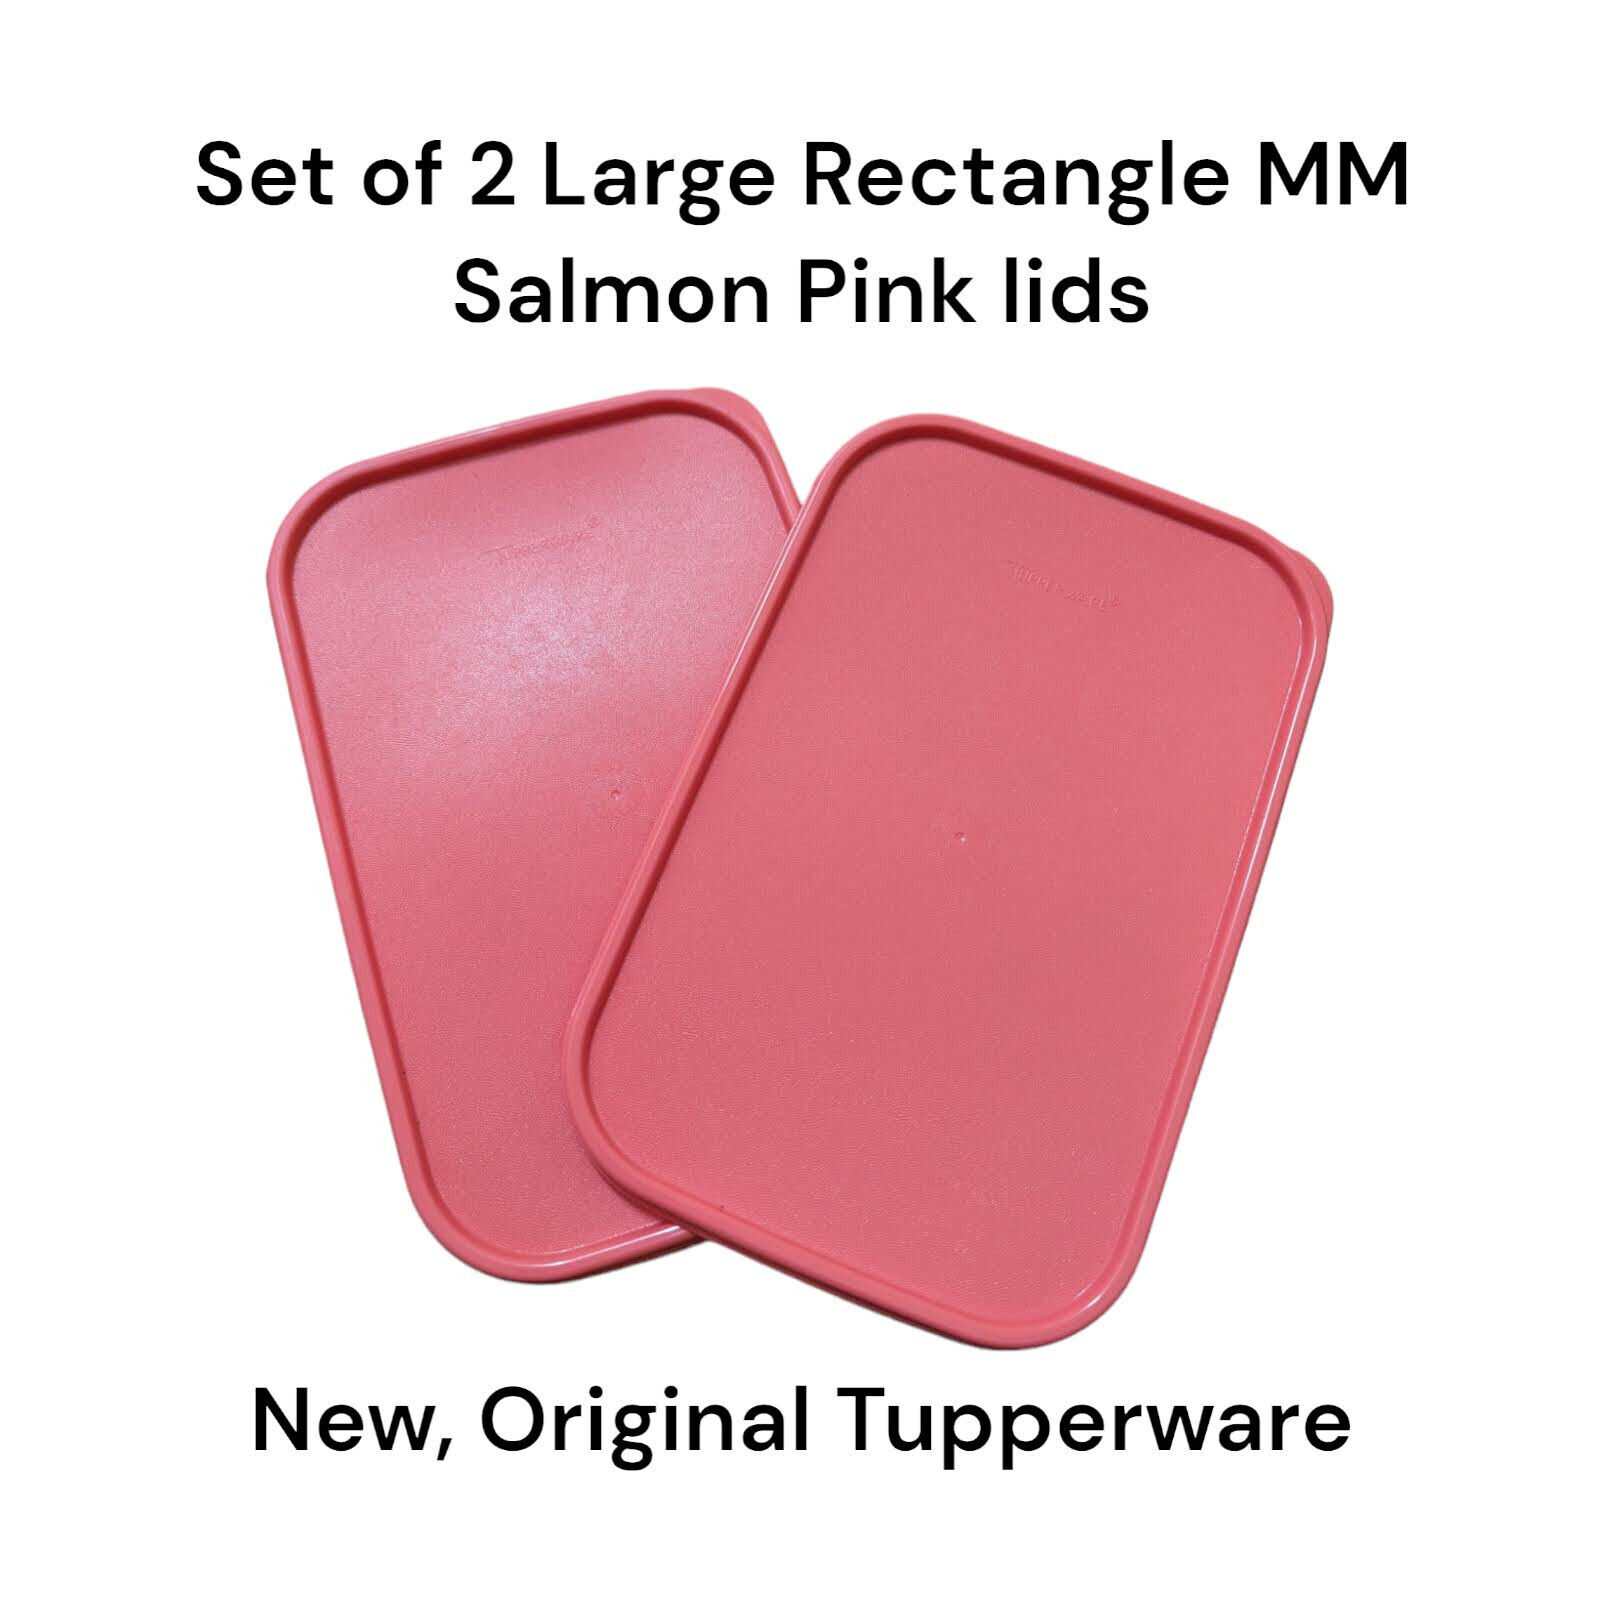 Tupperware Modular Mates Rectangle (Large) Salmon Pink 1610 2 Pcs Seal Lid